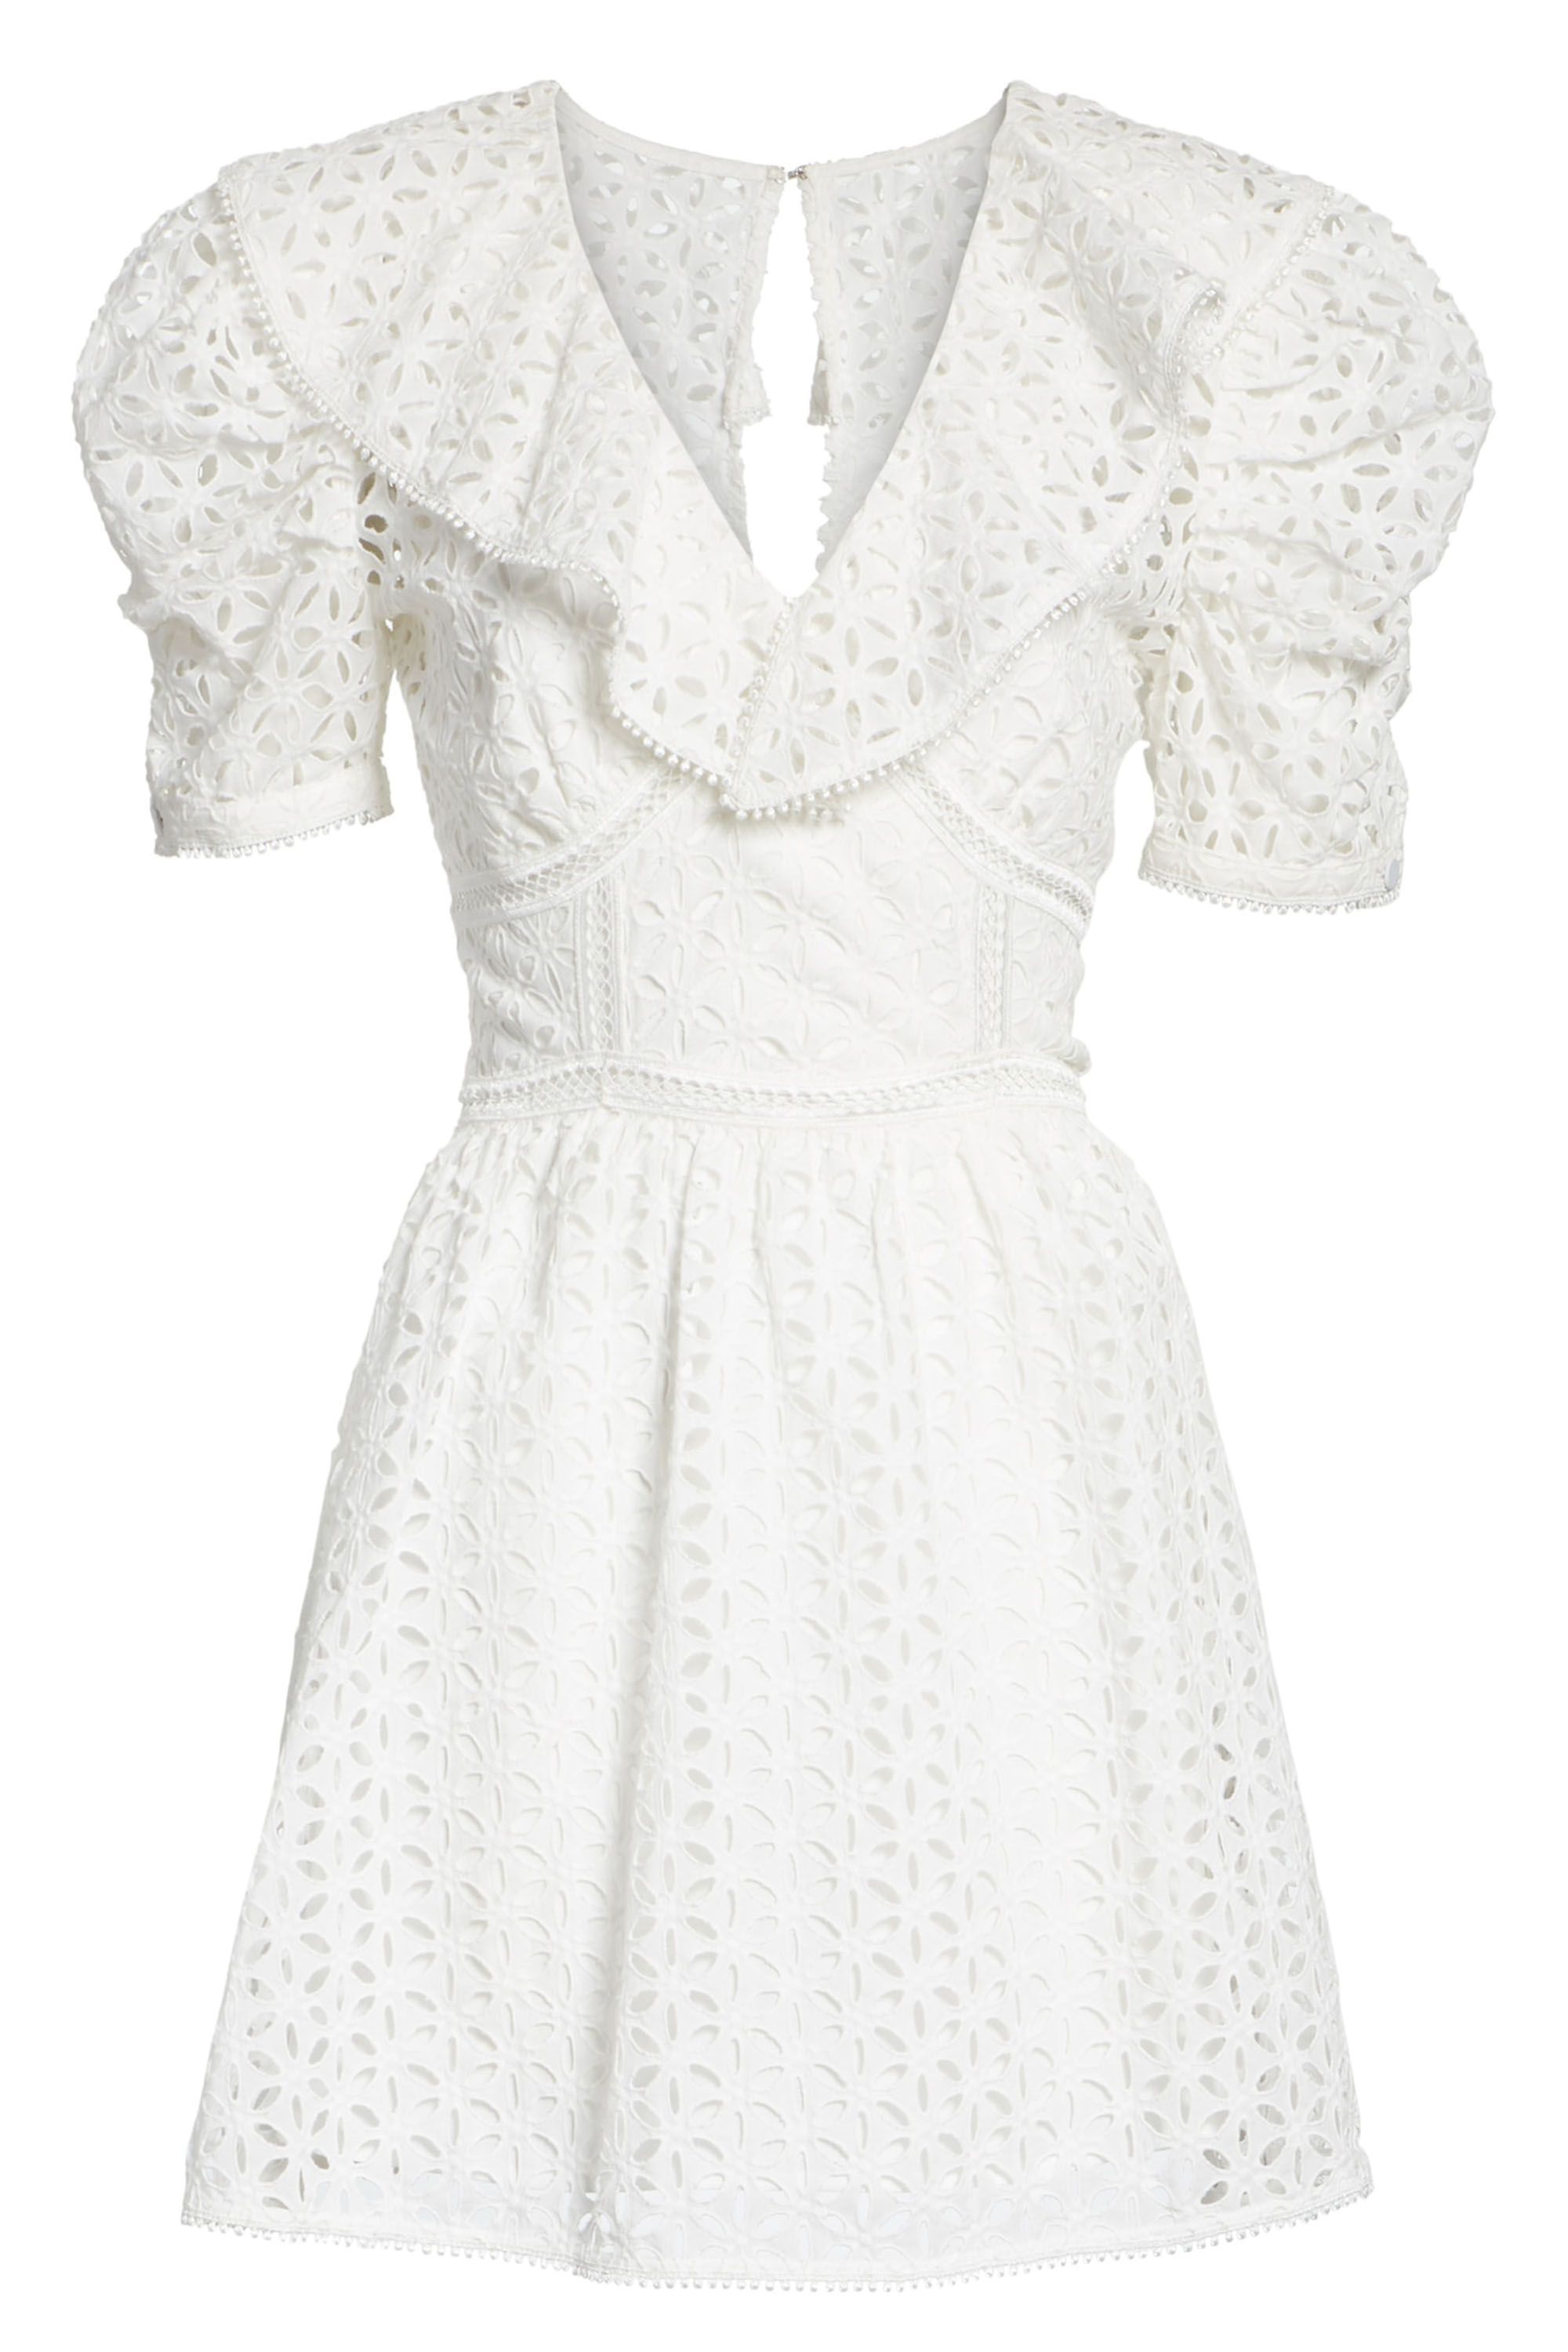 buy white summer dress